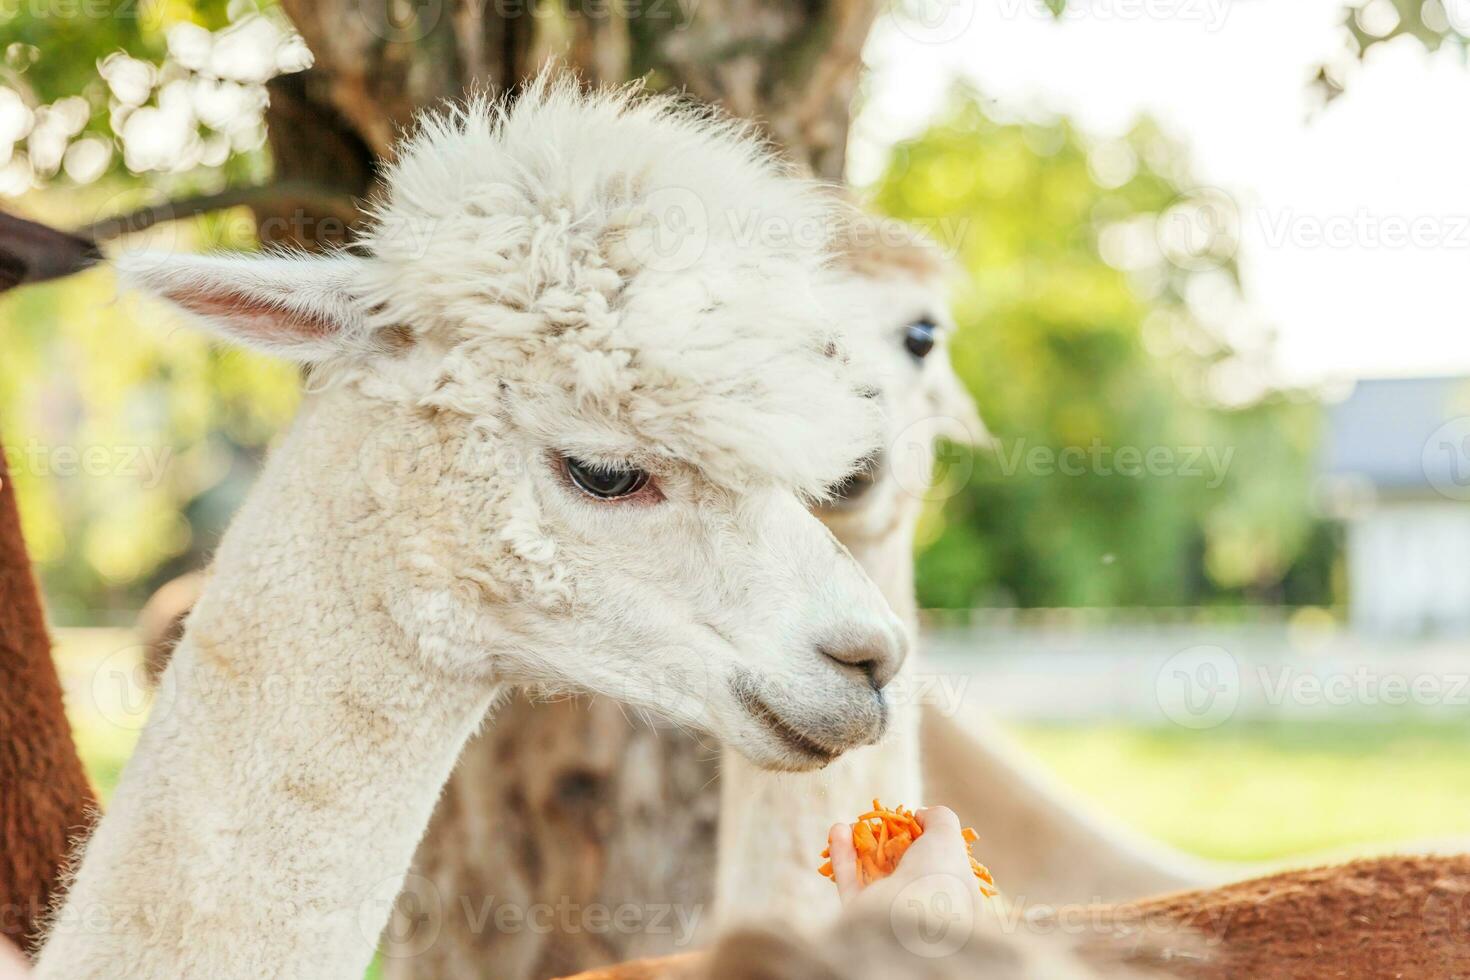 linda alpaca con cara graciosa comiendo alimento en la mano en el rancho en el día de verano. alpacas domésticas pastando en pastos en una granja ecológica natural, fondo rural. concepto de cuidado animal y agricultura ecológica. foto